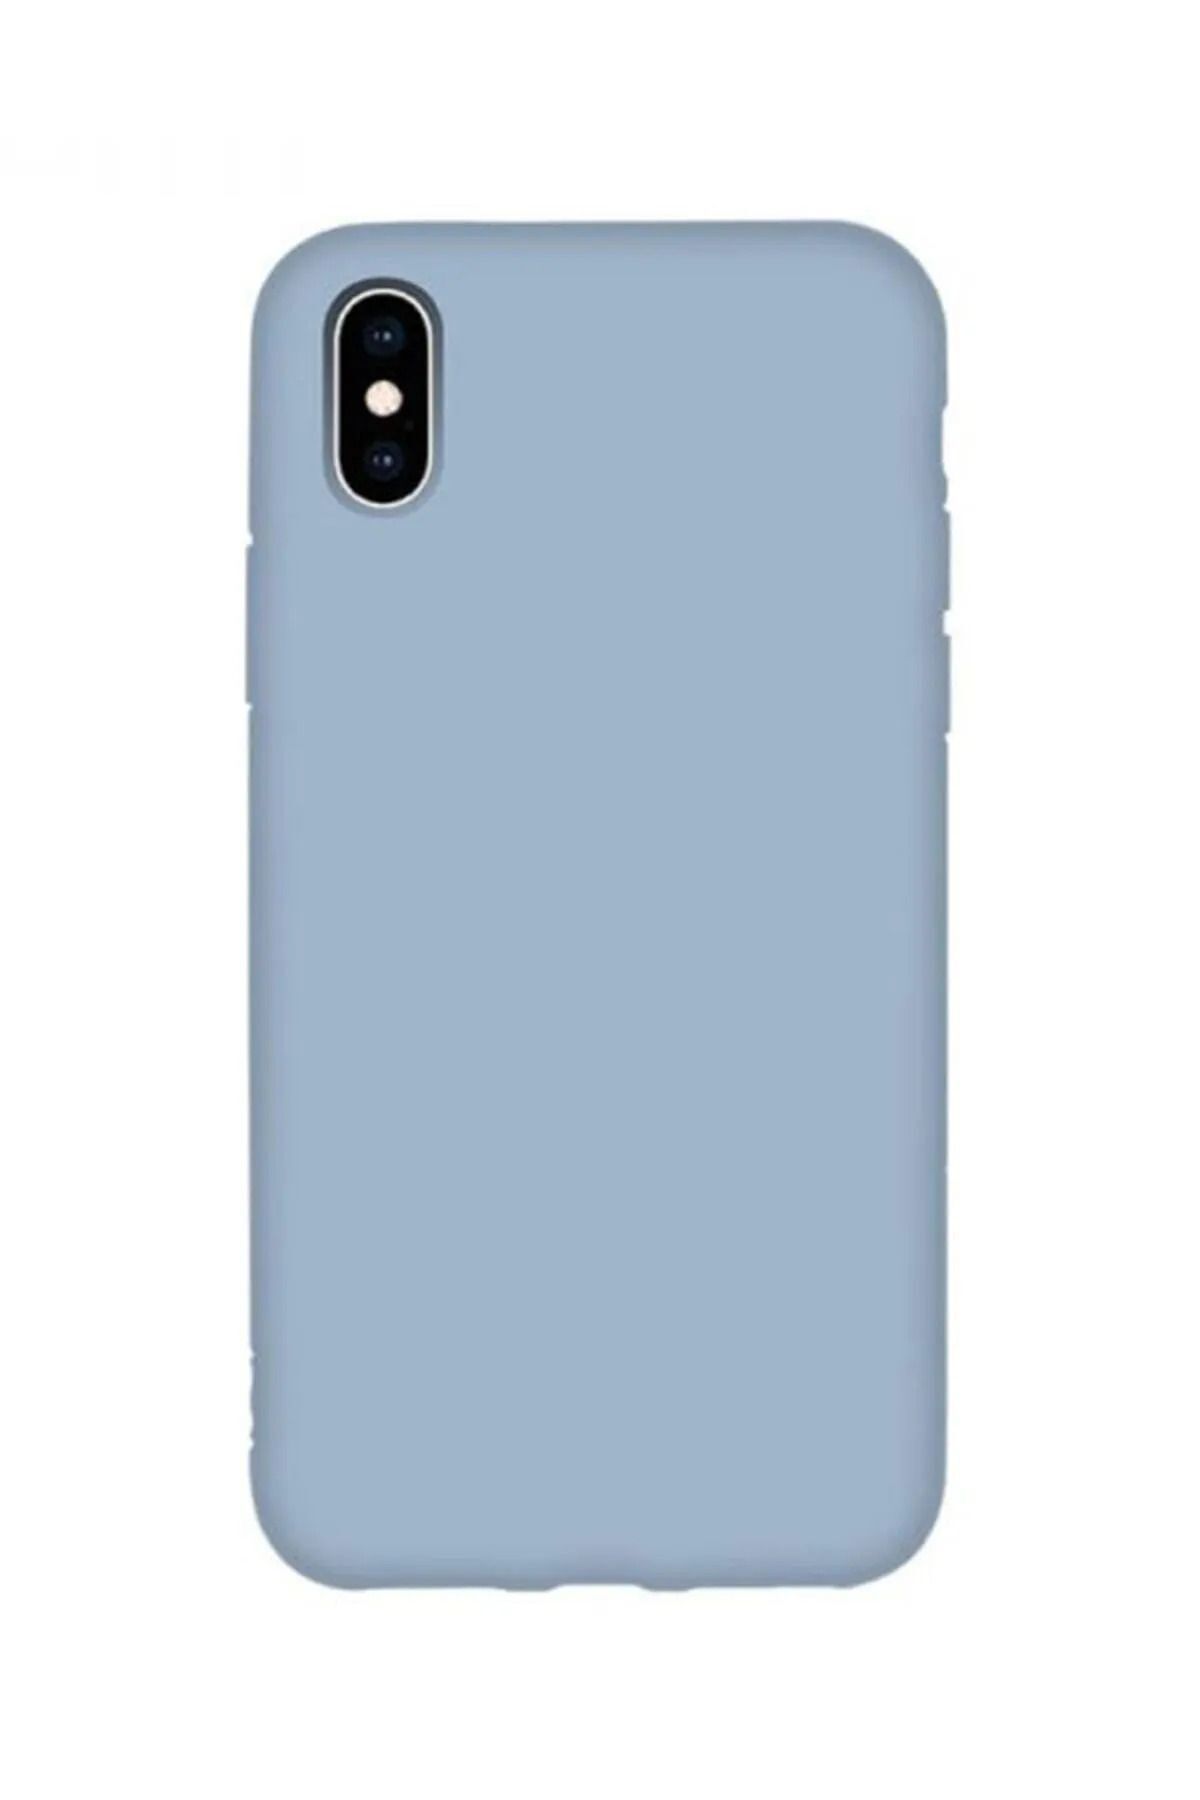 KVK PRİVACY Iphone X/xs Uyumlu Içi Kadife Lansman Silikon Kılıf Kapak Bebe Mavisi